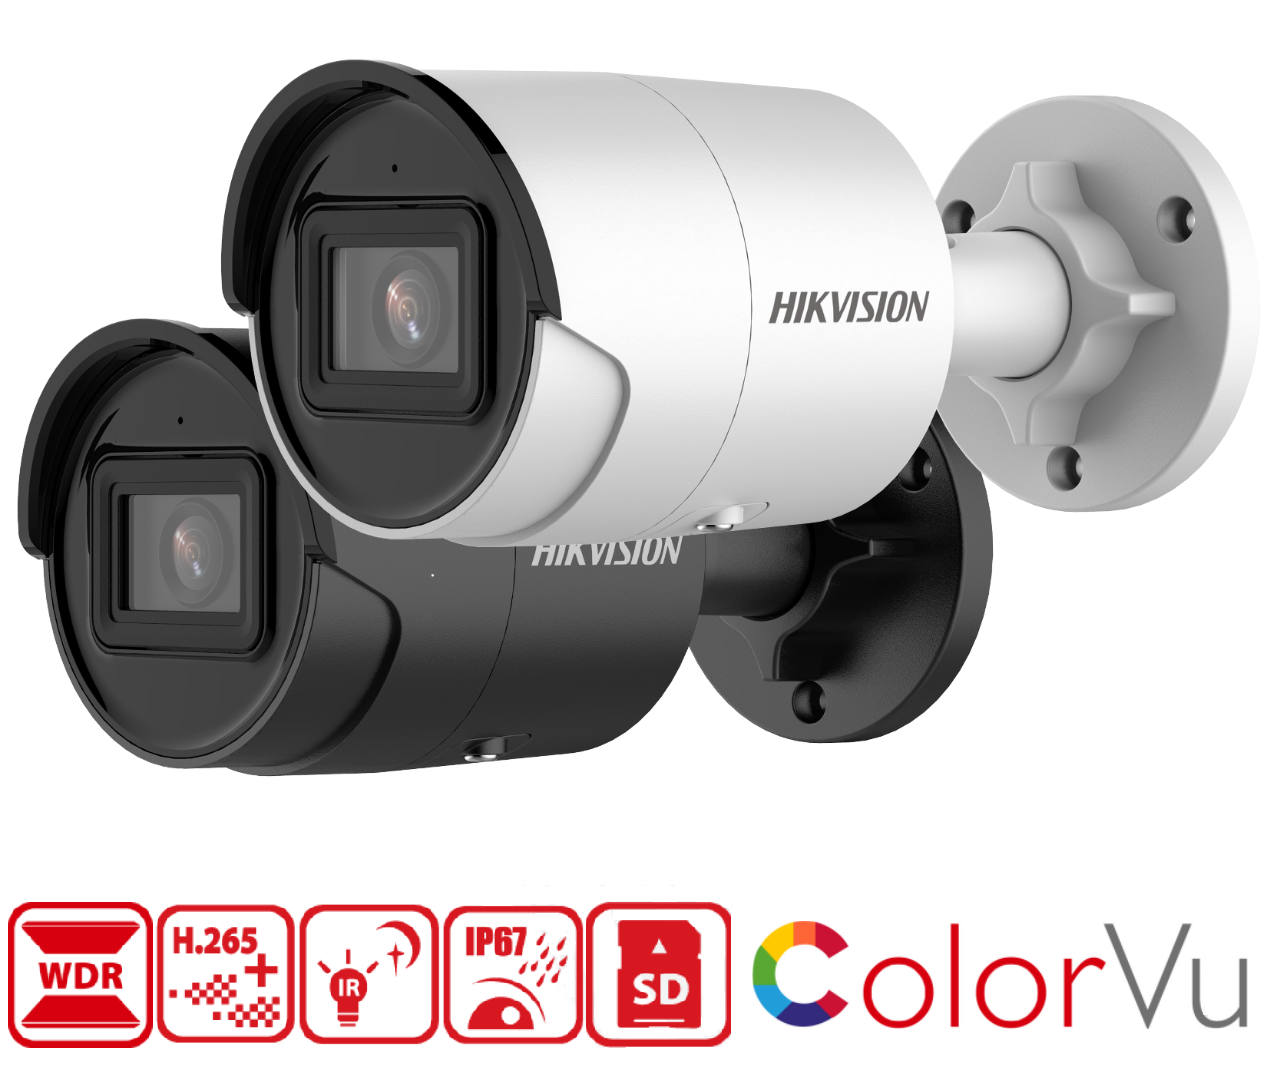 Kamera Hikvision  DS-2CD2043G2-IU má rozlišení 2688 x 1520px při 25 fps, krytí IP67, 120dB WDR snímač DarkFighter, micro SD slot na 256GB kartu, podporu kodeku H.265, barevné noční vidění ColorVu a algoritmus hlubokého učení AcuSense 2.0 pro chytrou detekci pohybu.